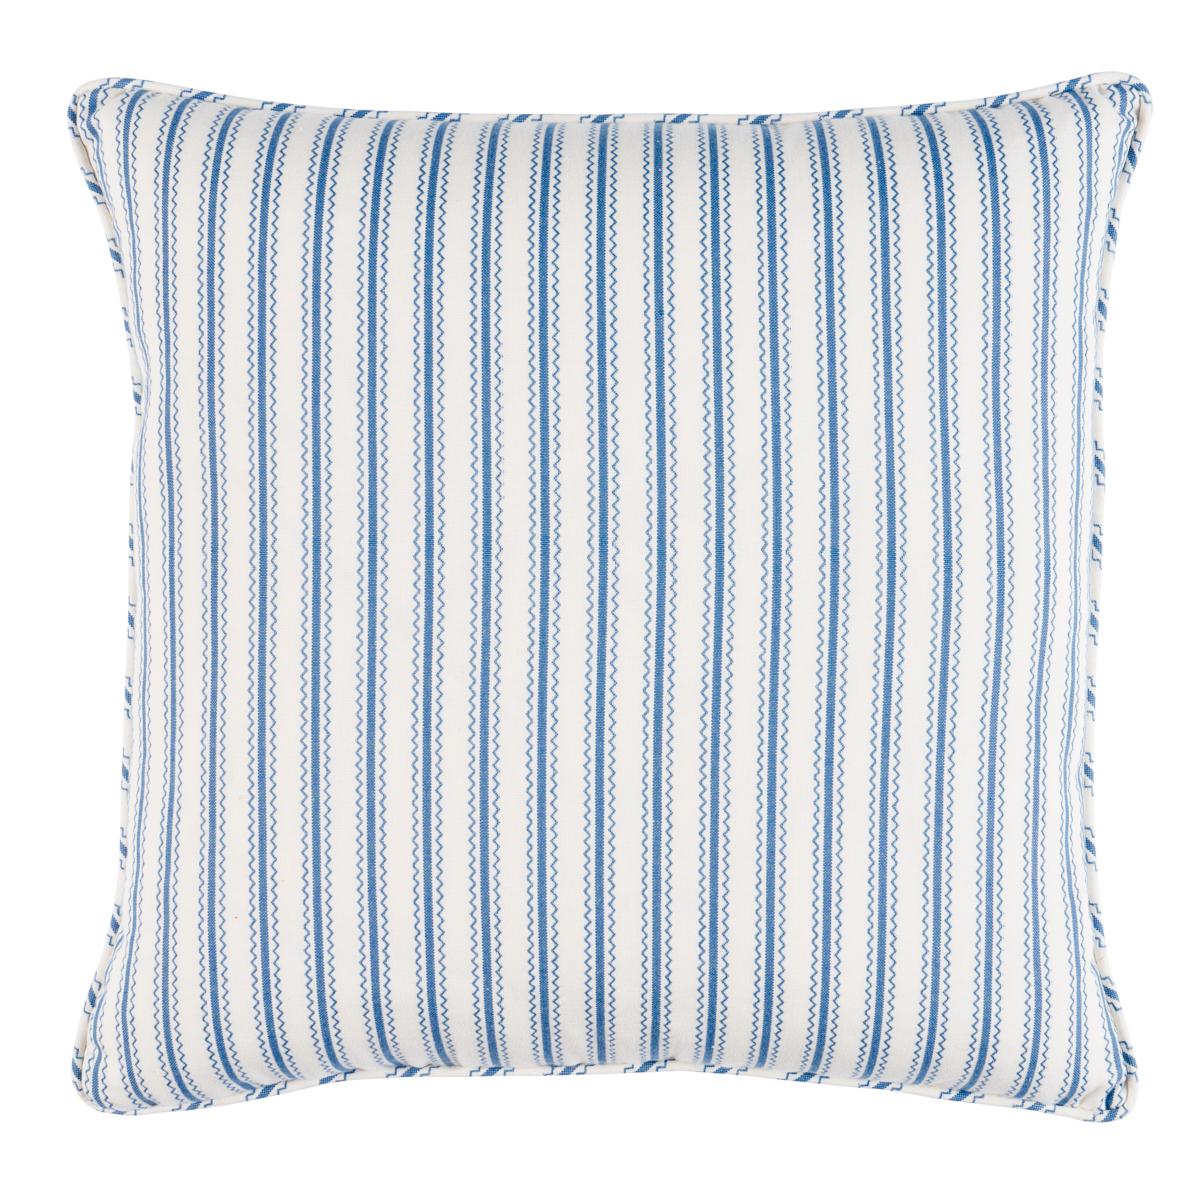 Birdie Ticking Stripe Pillow in Indigo 22 x 22" For Sale